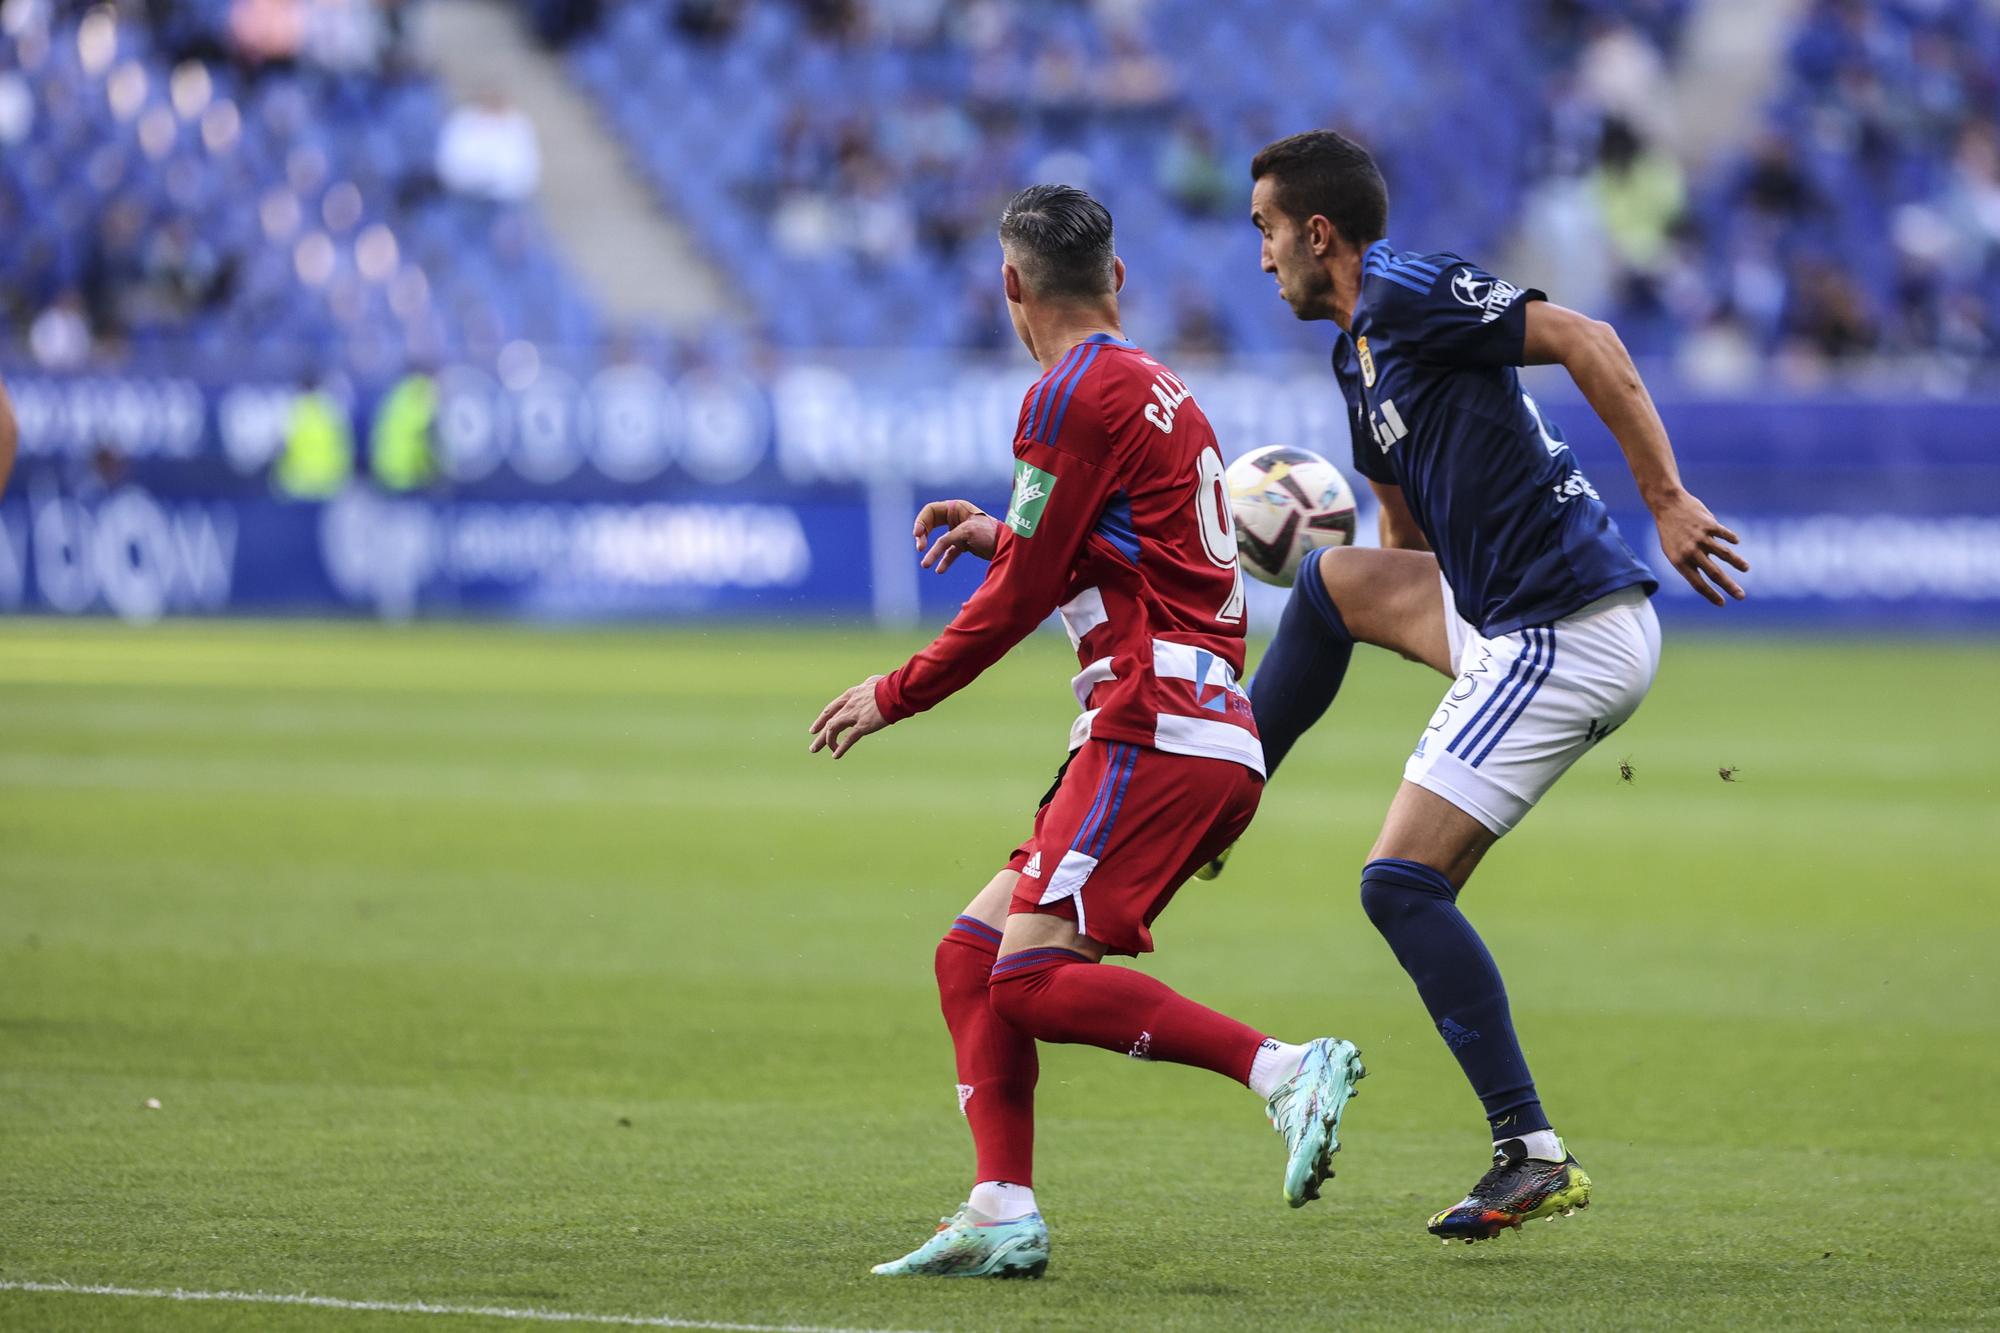 En imágenes: así fue el encuentro entre Real Oviedo y Granada en el Tartiere